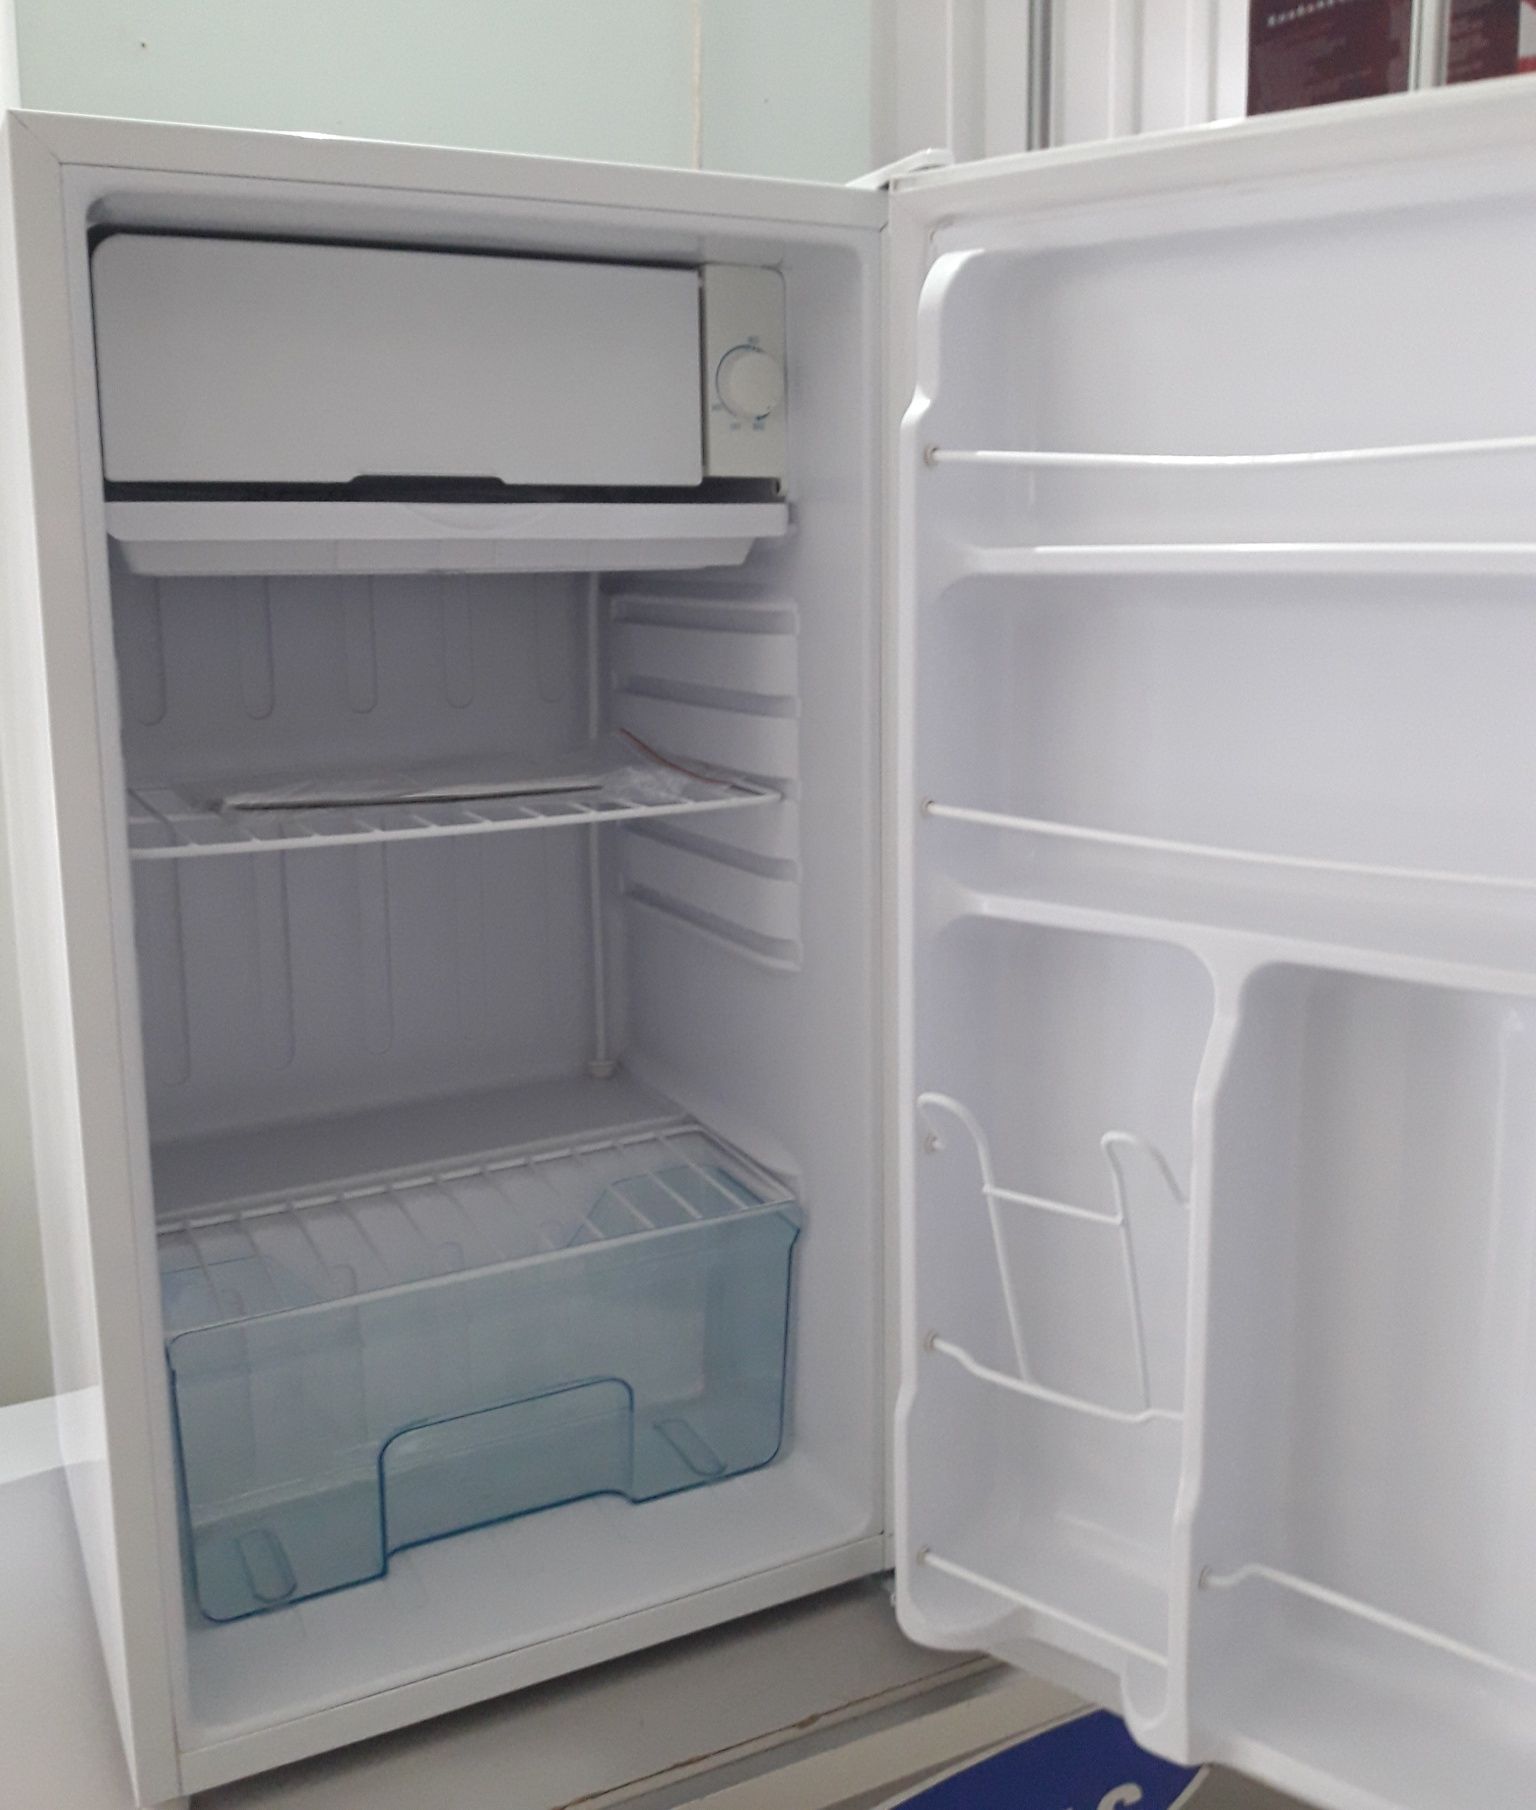 Новый холодильник объемом 86 литров